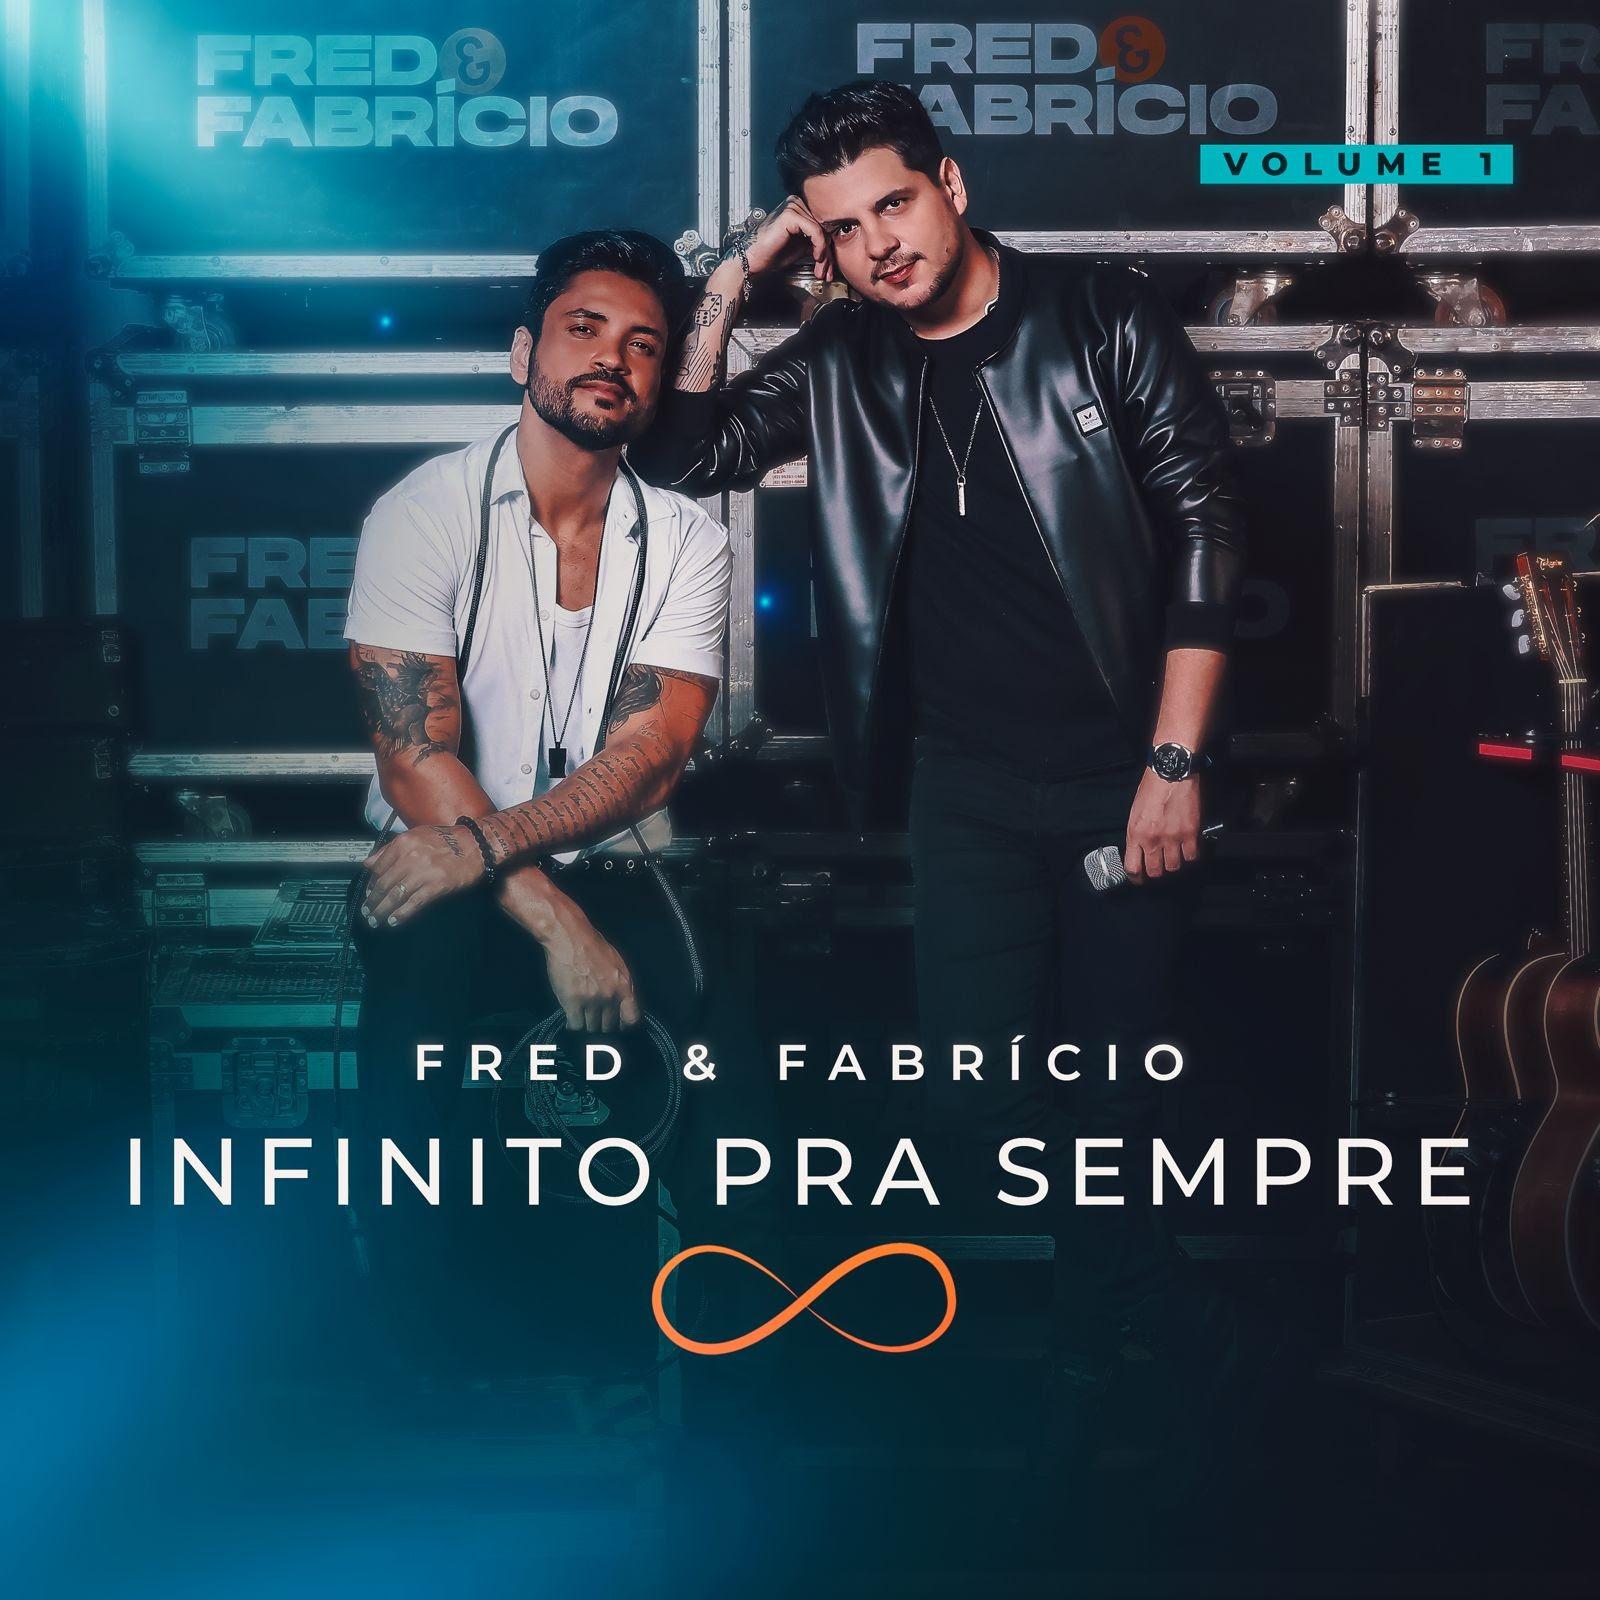 Fred & Fabrício: Lançamento da Primeira Parte do Projeto “Infinito Para Sempre” – Novo Sucesso Sertanejo